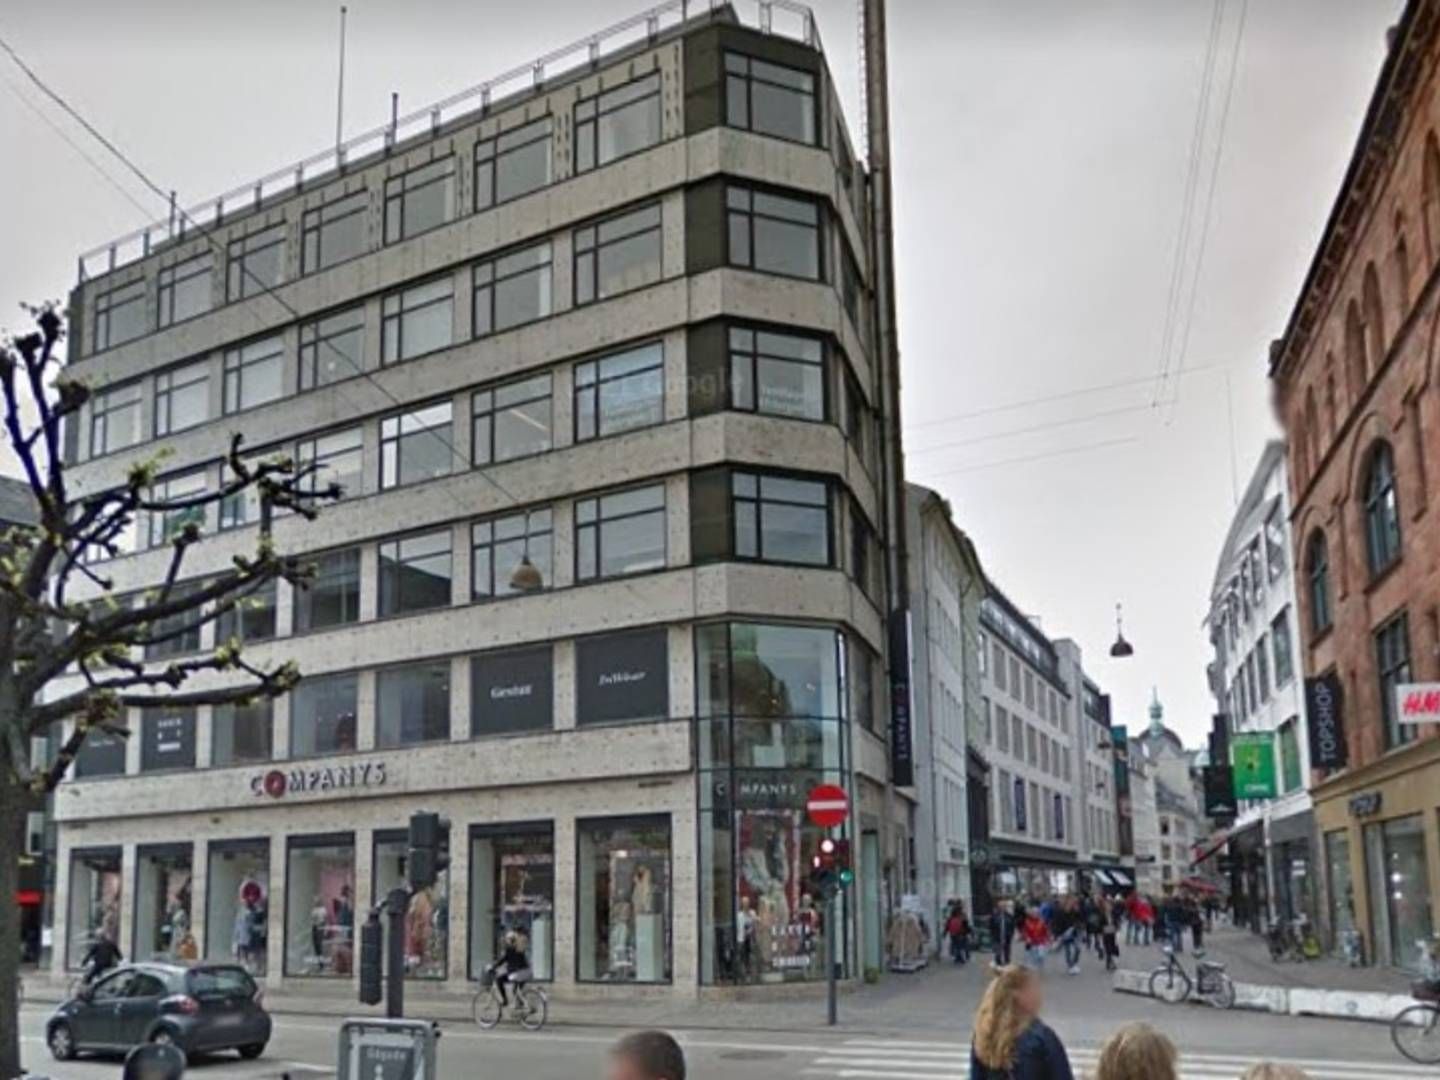 Aage Bangs Fonds største aktiv er ejendommen Østergade 27 på Strøget i København, der i seneste regnskab er opgjort til 163 mio. kr. Formandens søn står i spidsen for et stort renoverings- og forbedringsprojekt af ejendommen. | Foto: Google